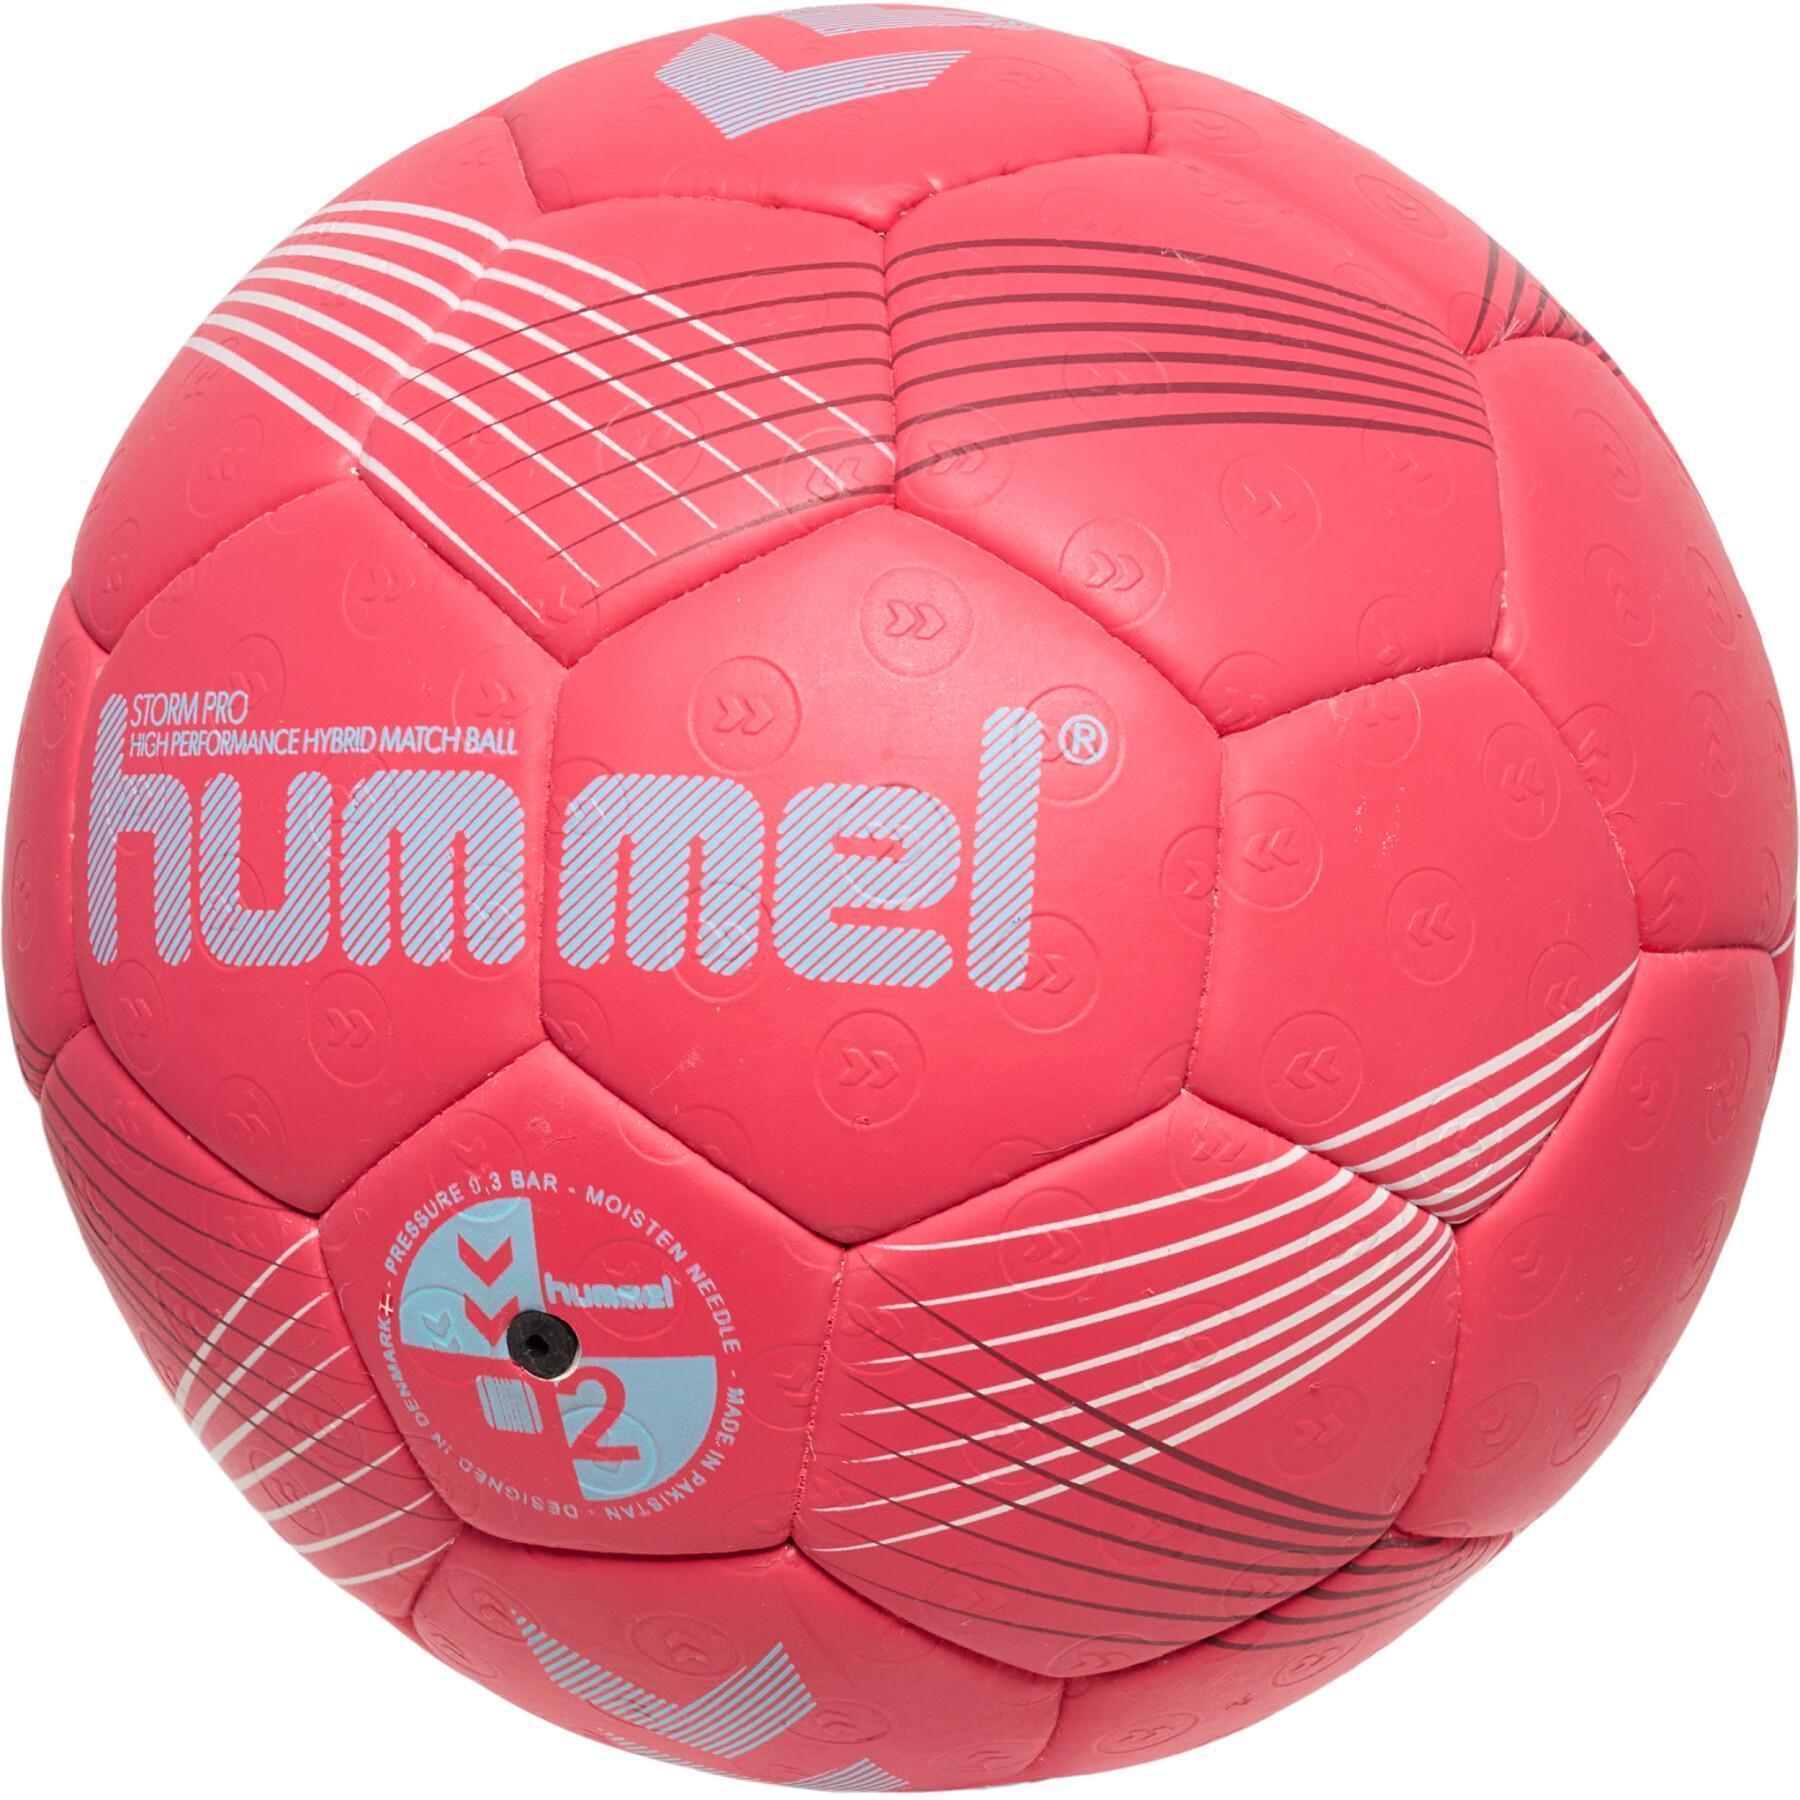 Handball Hummel Storm Pro